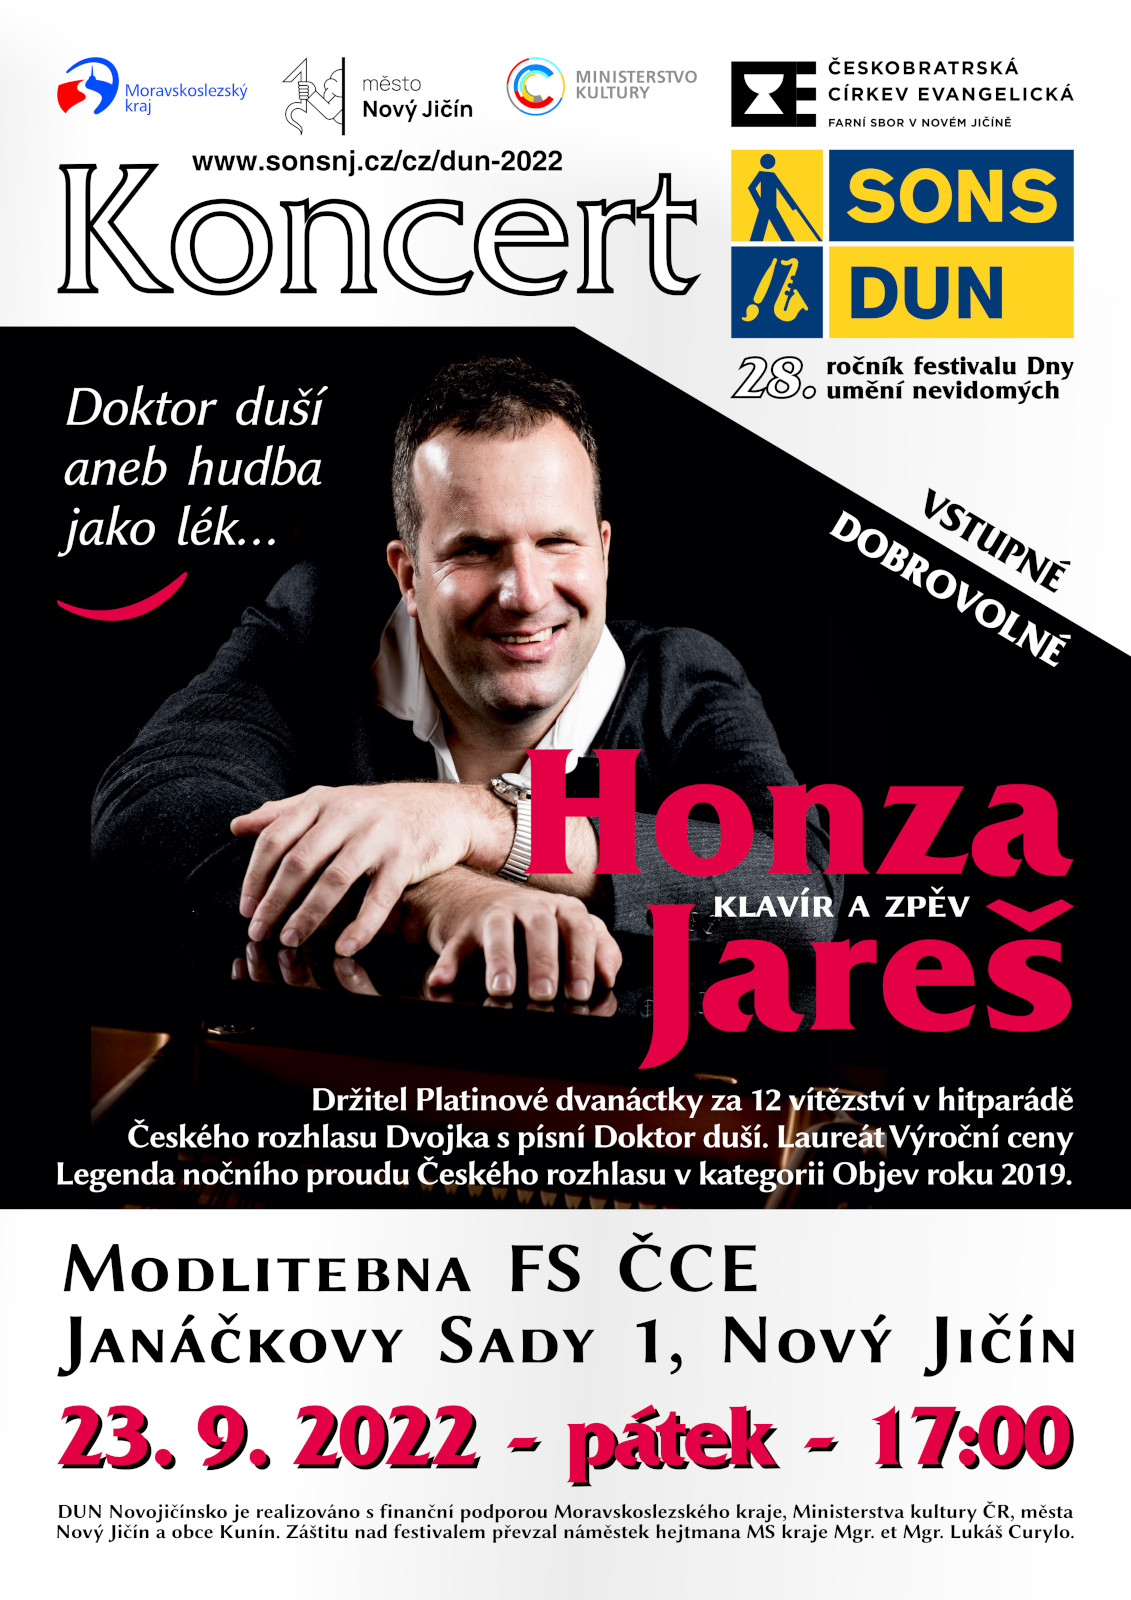 Pozvánka na koncert DUN v modlitebně FS ČCE v Novém Jičíně.